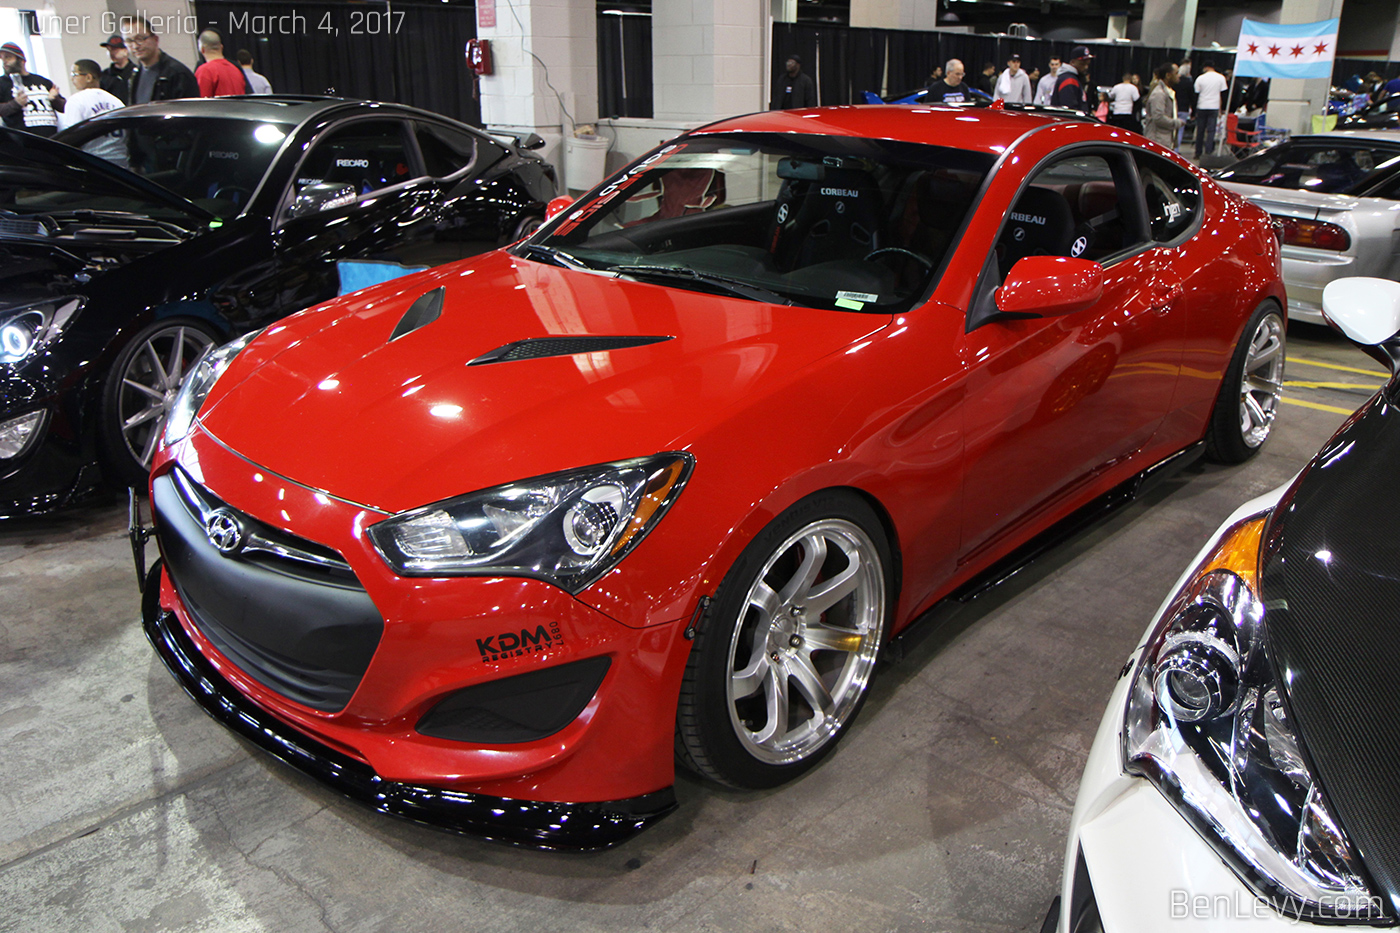 Red Hyundai Genesis coupe